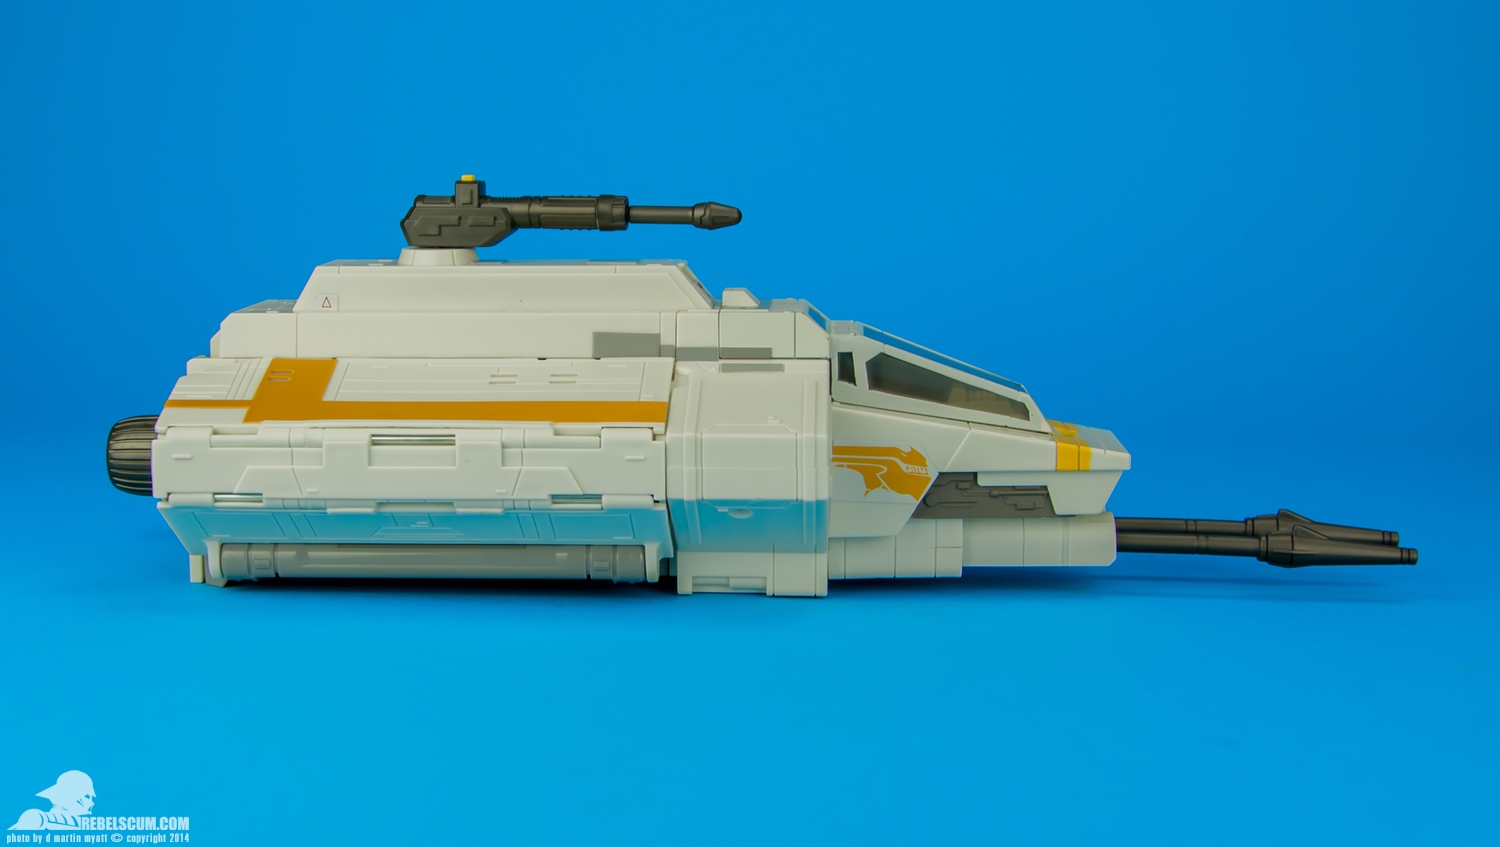 Rebels-Vehicles-series-1-The-Phantom-Attack-Shuttle-002.jpg